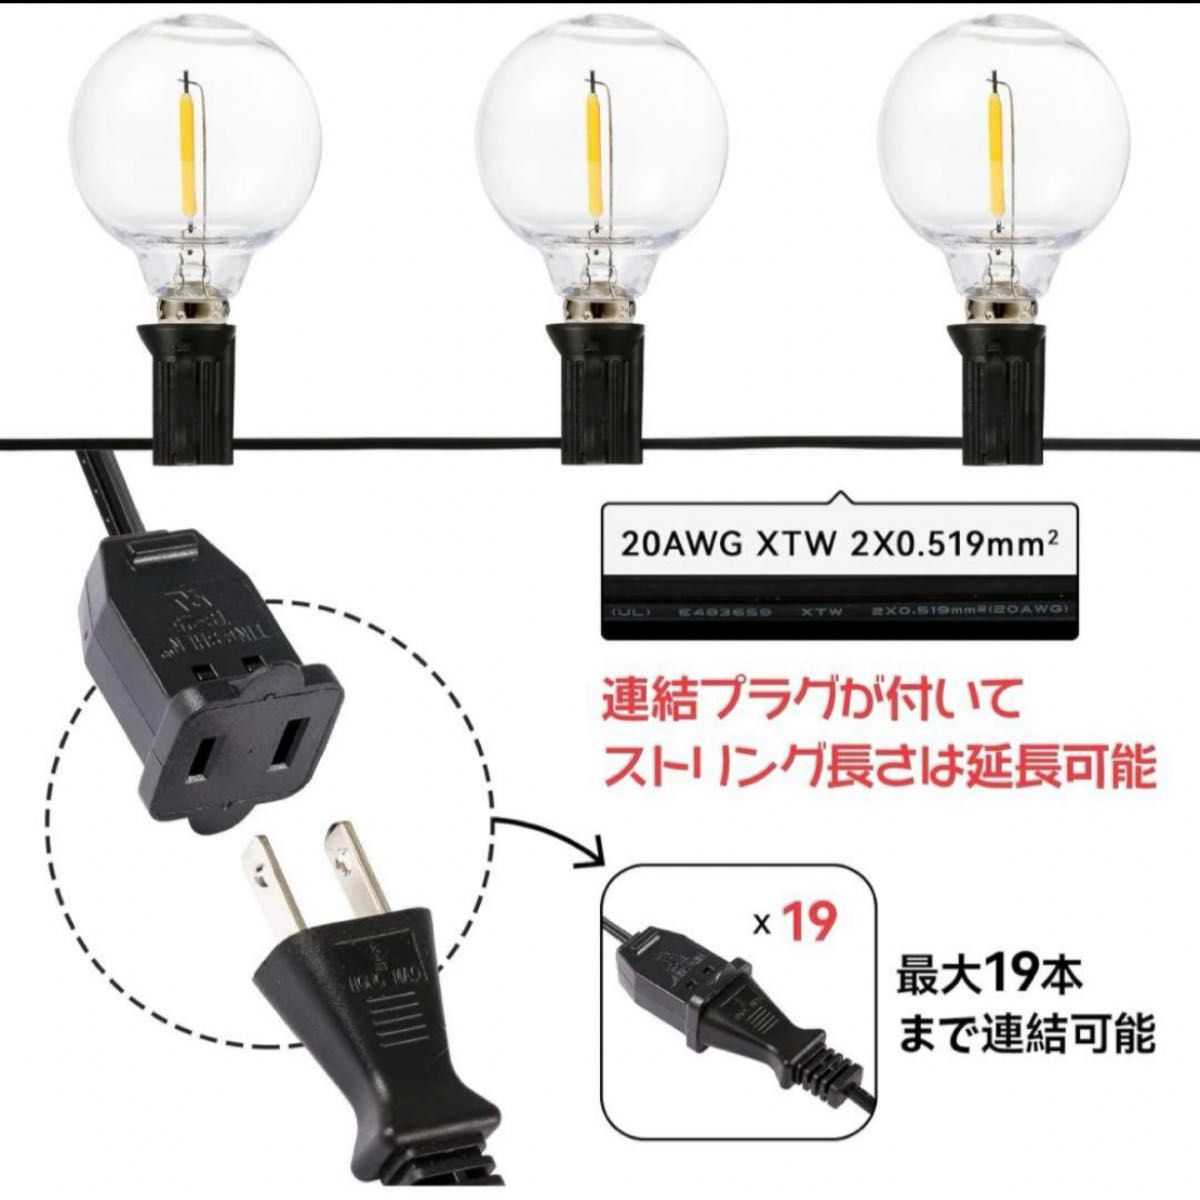 ストリングライト 防雨型 LED電球 E12口金 電球色24個